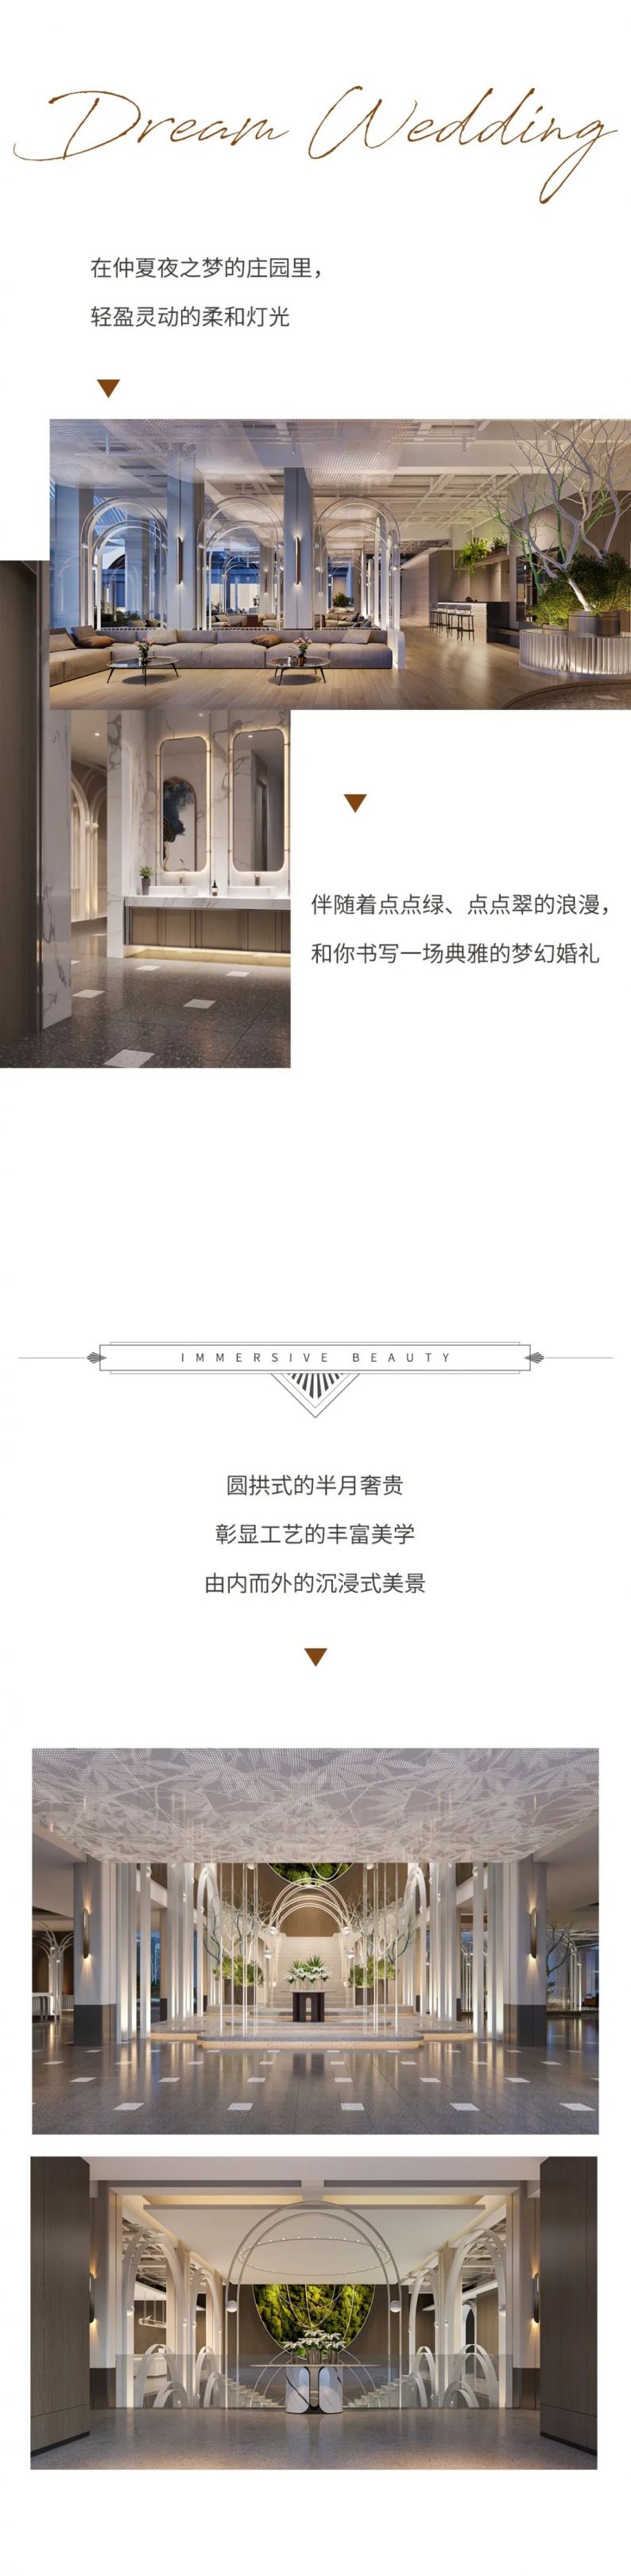 婚礼堂发布：沈阳禧悦婚礼艺术中心全新升级  第4张